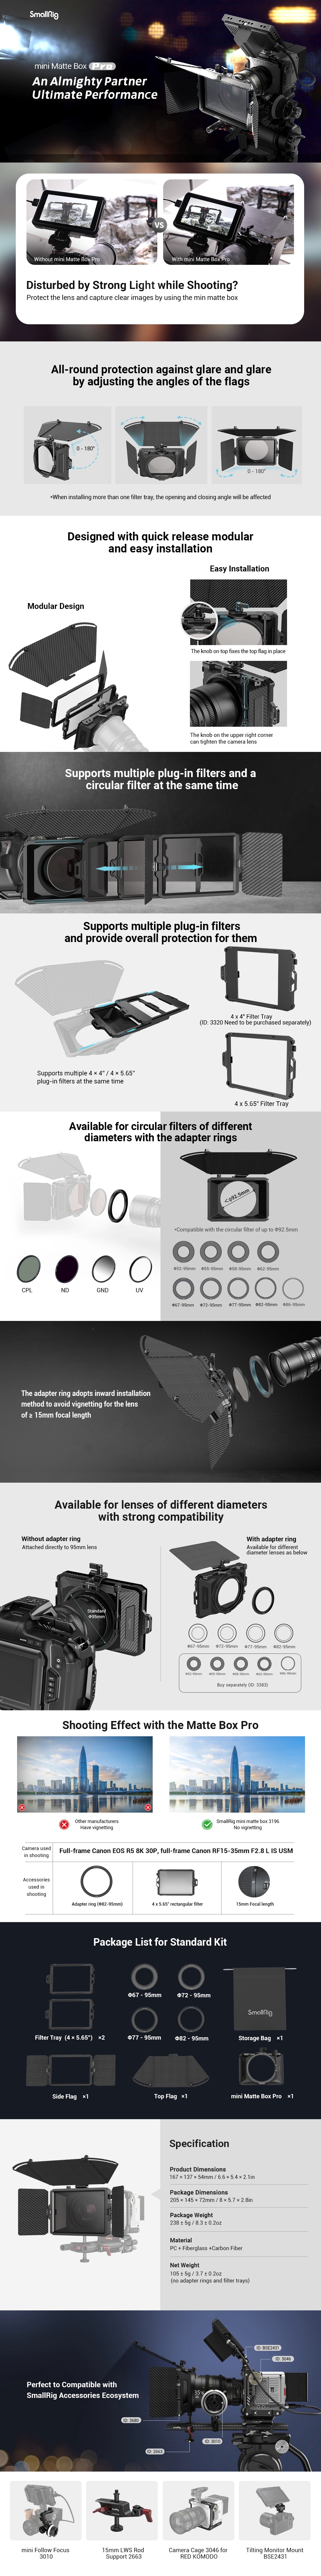 SmallRig mini Matte Box Pro 3680 แมทบ็อกซ์สำหรับชุดริกกล้อง ป้องกันแสงส่วนเกินเข้าสู่หน้าเลนส์ พร้อมถาดใส่ฟิลเตอร์ขนาด 4 x 5.65 สองแผ่น ราคา 4850 บาท